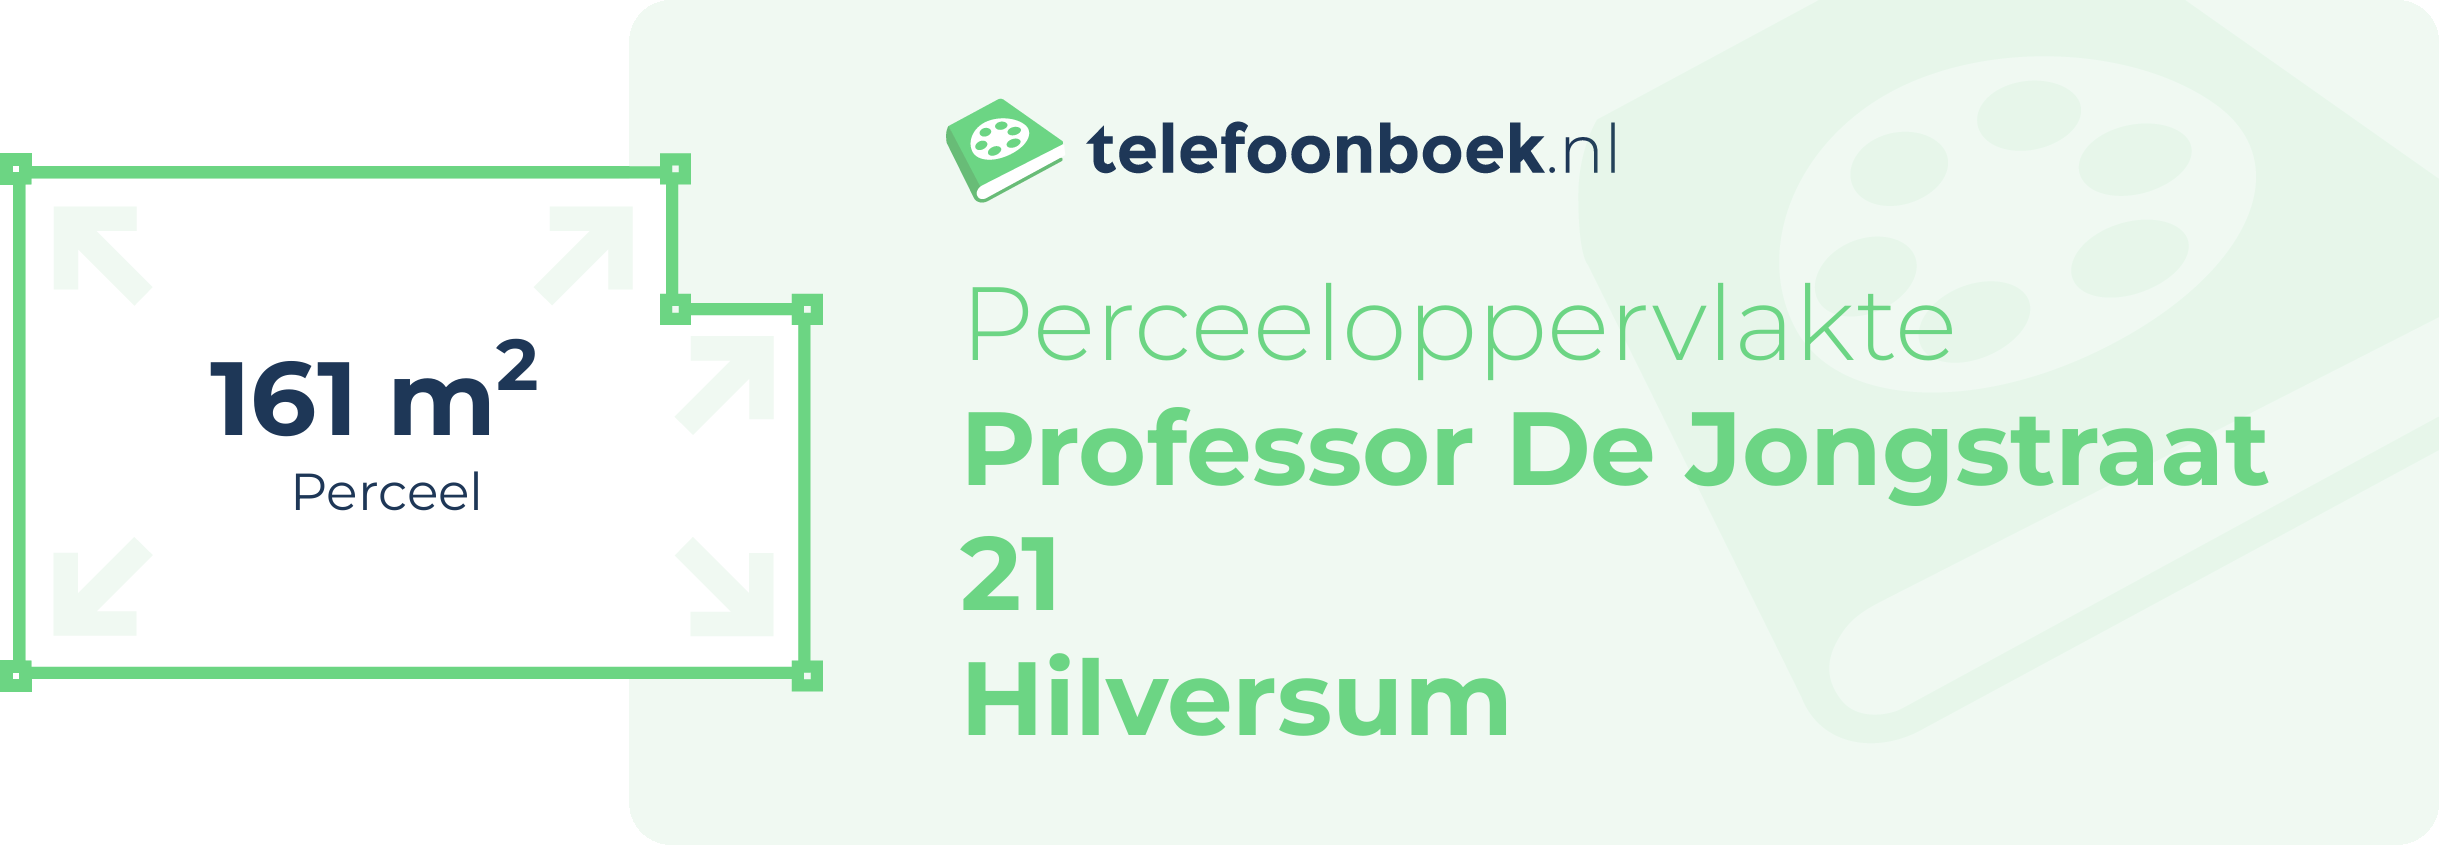 Perceeloppervlakte Professor De Jongstraat 21 Hilversum